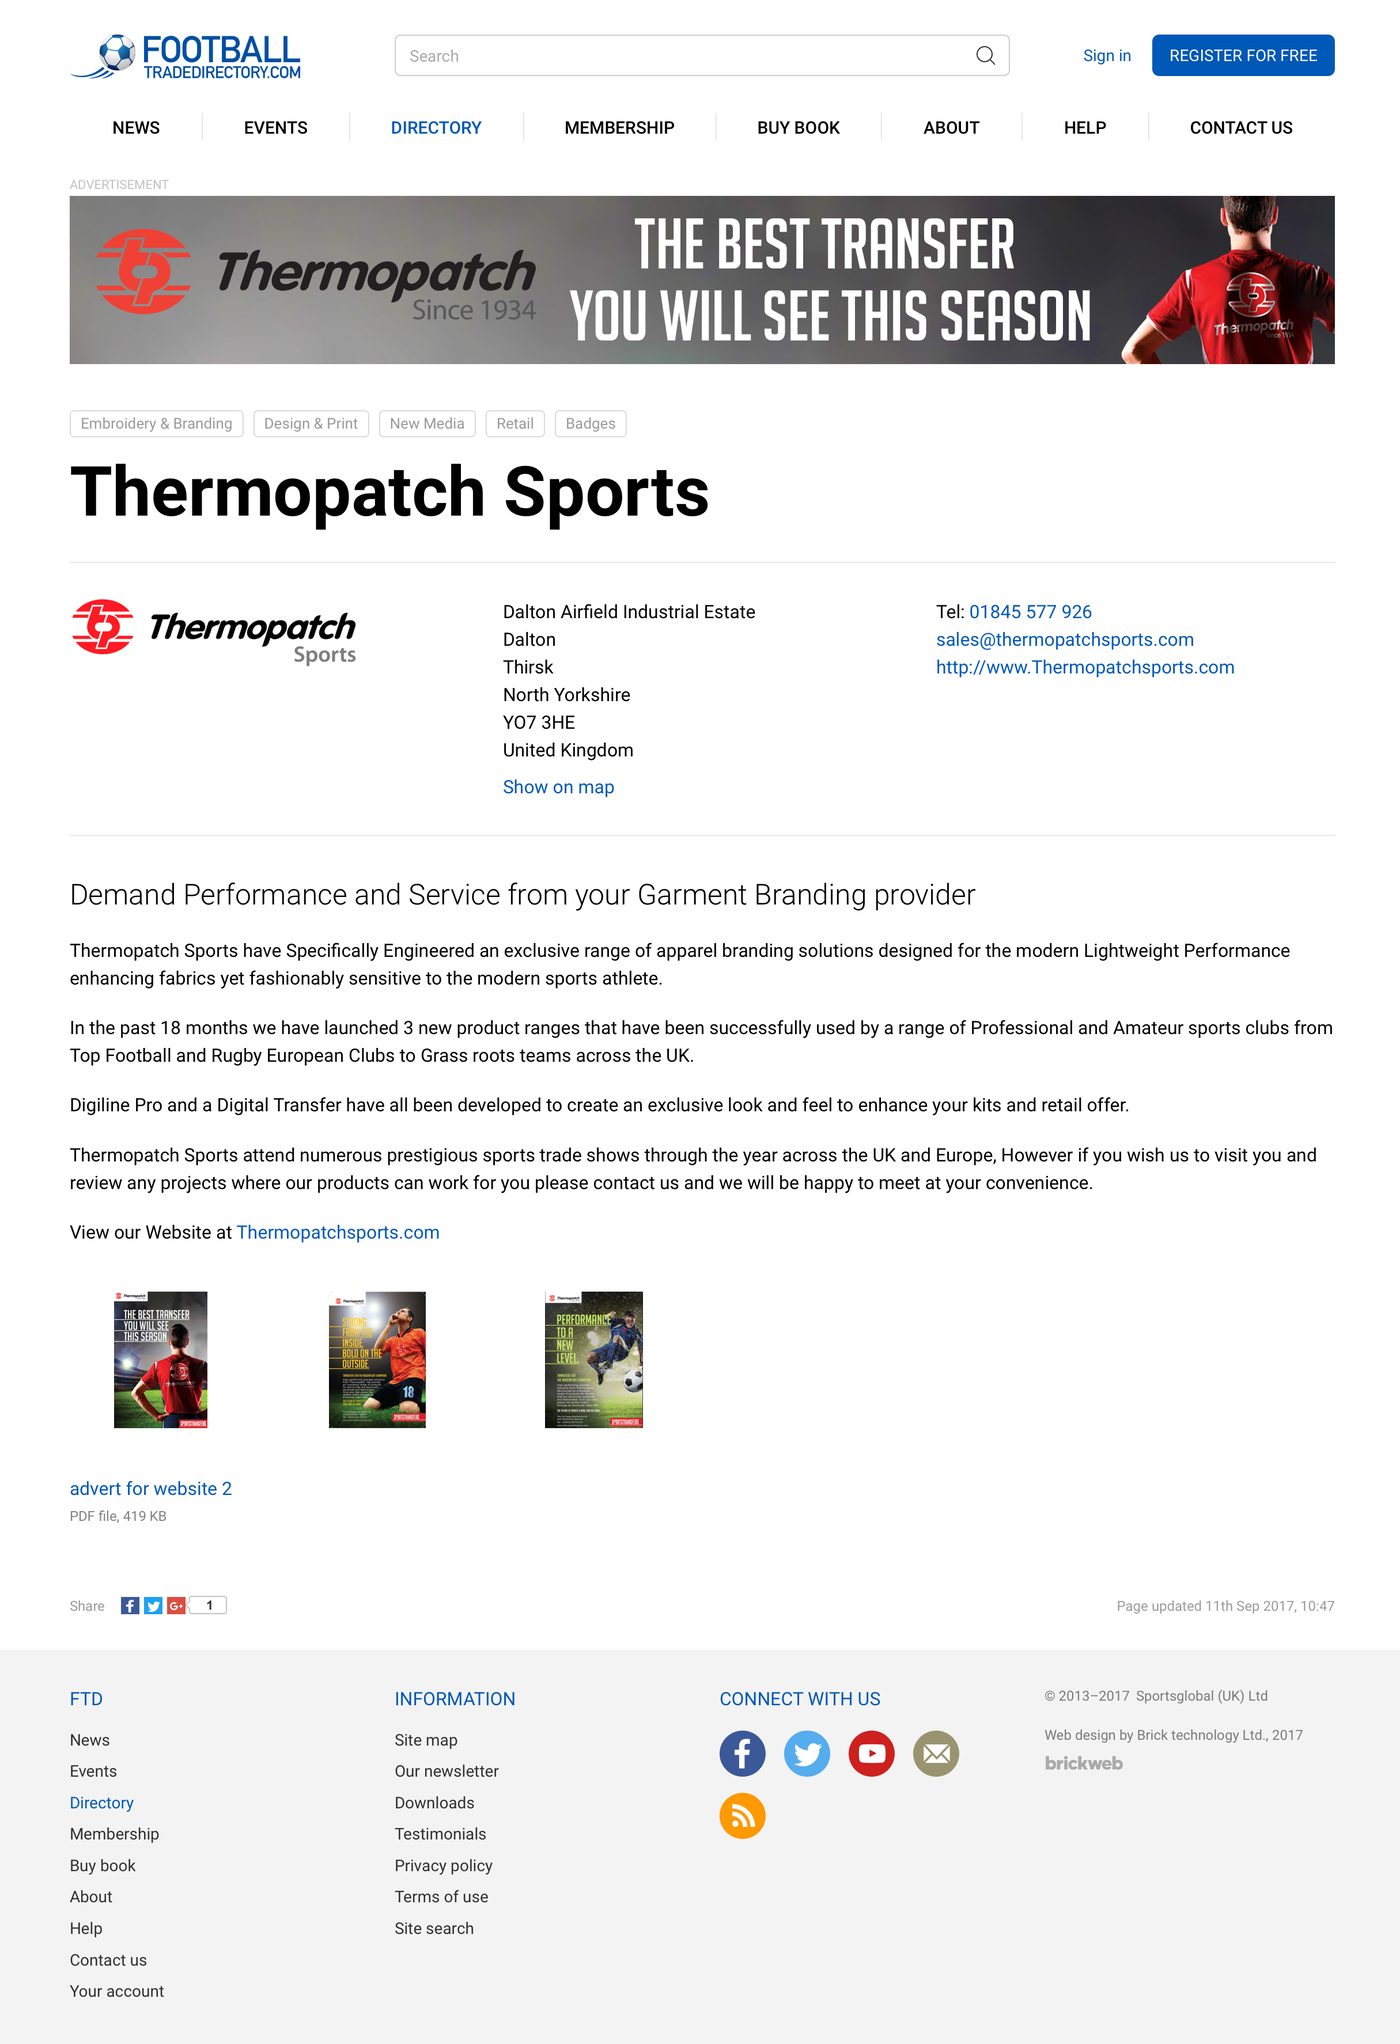 Football Trade Directory Company